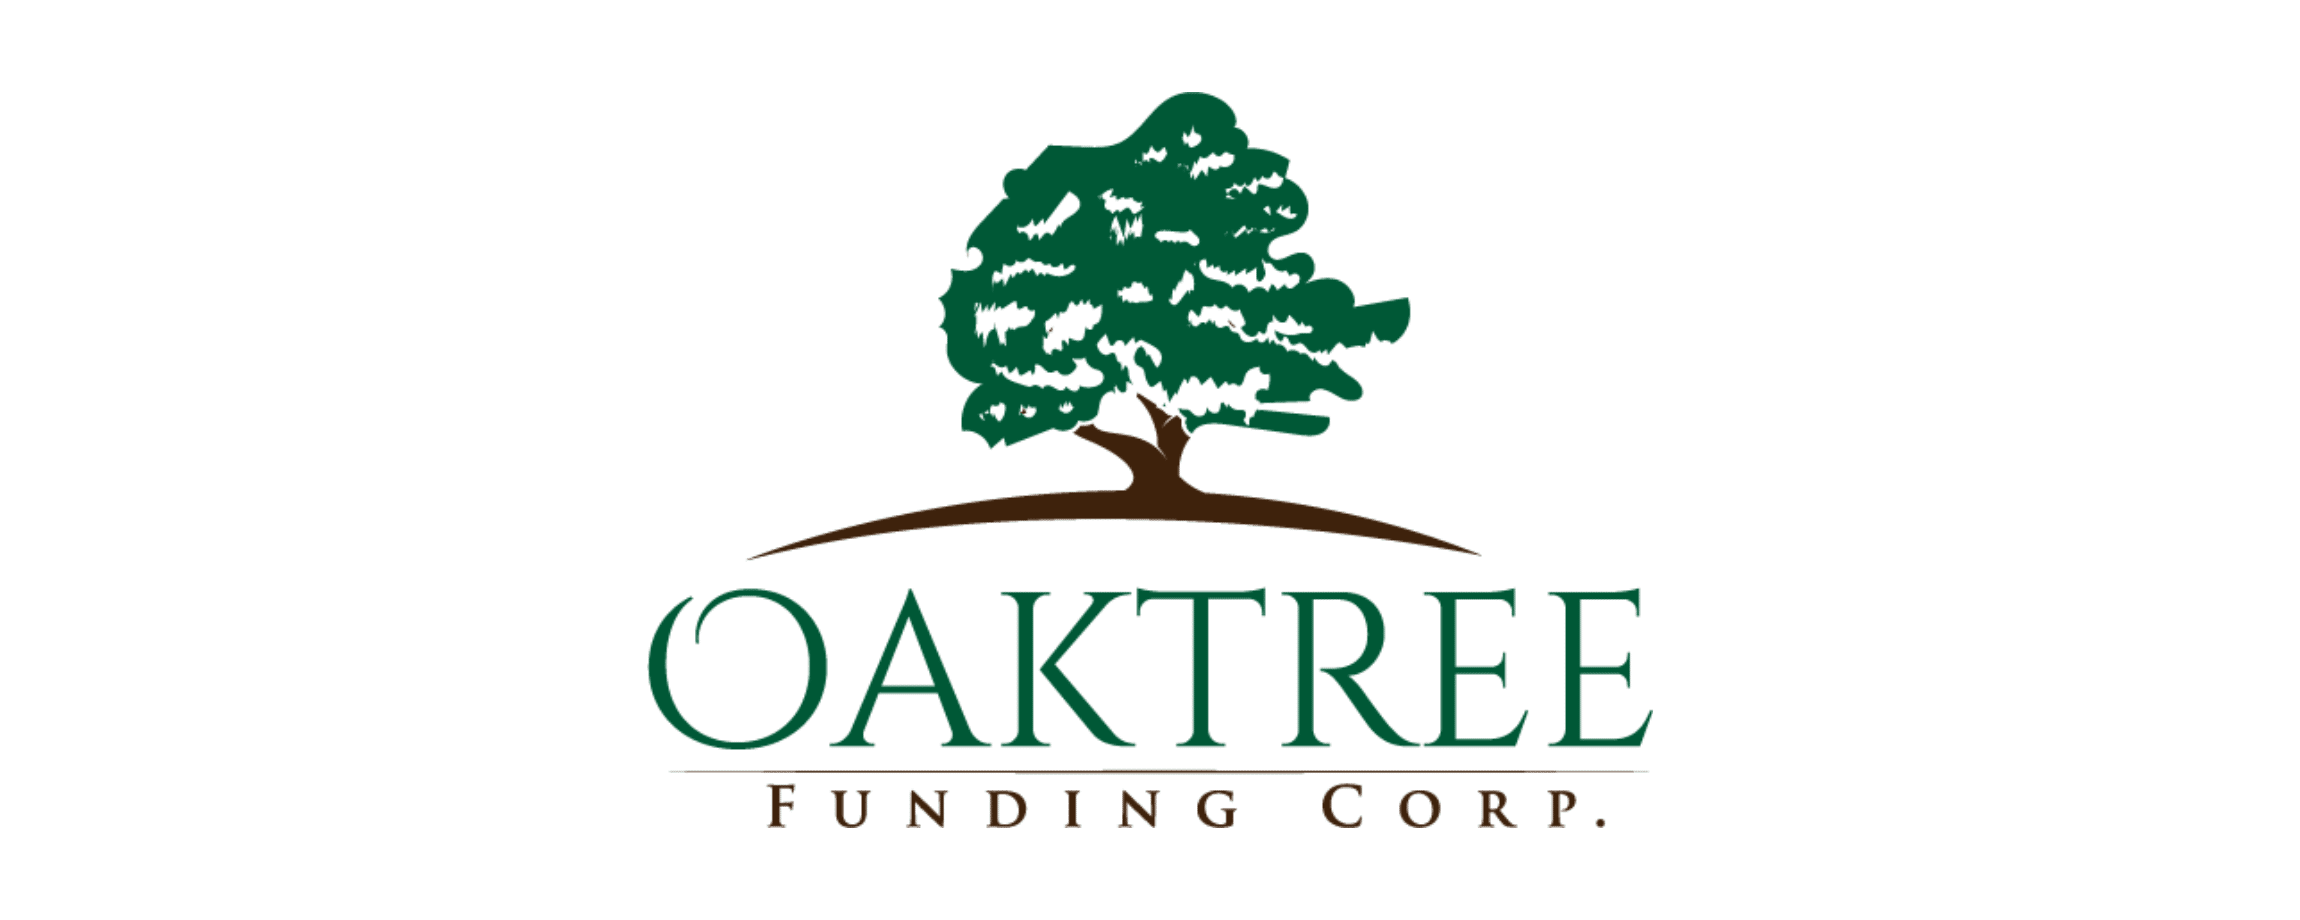 Oaktree Funding